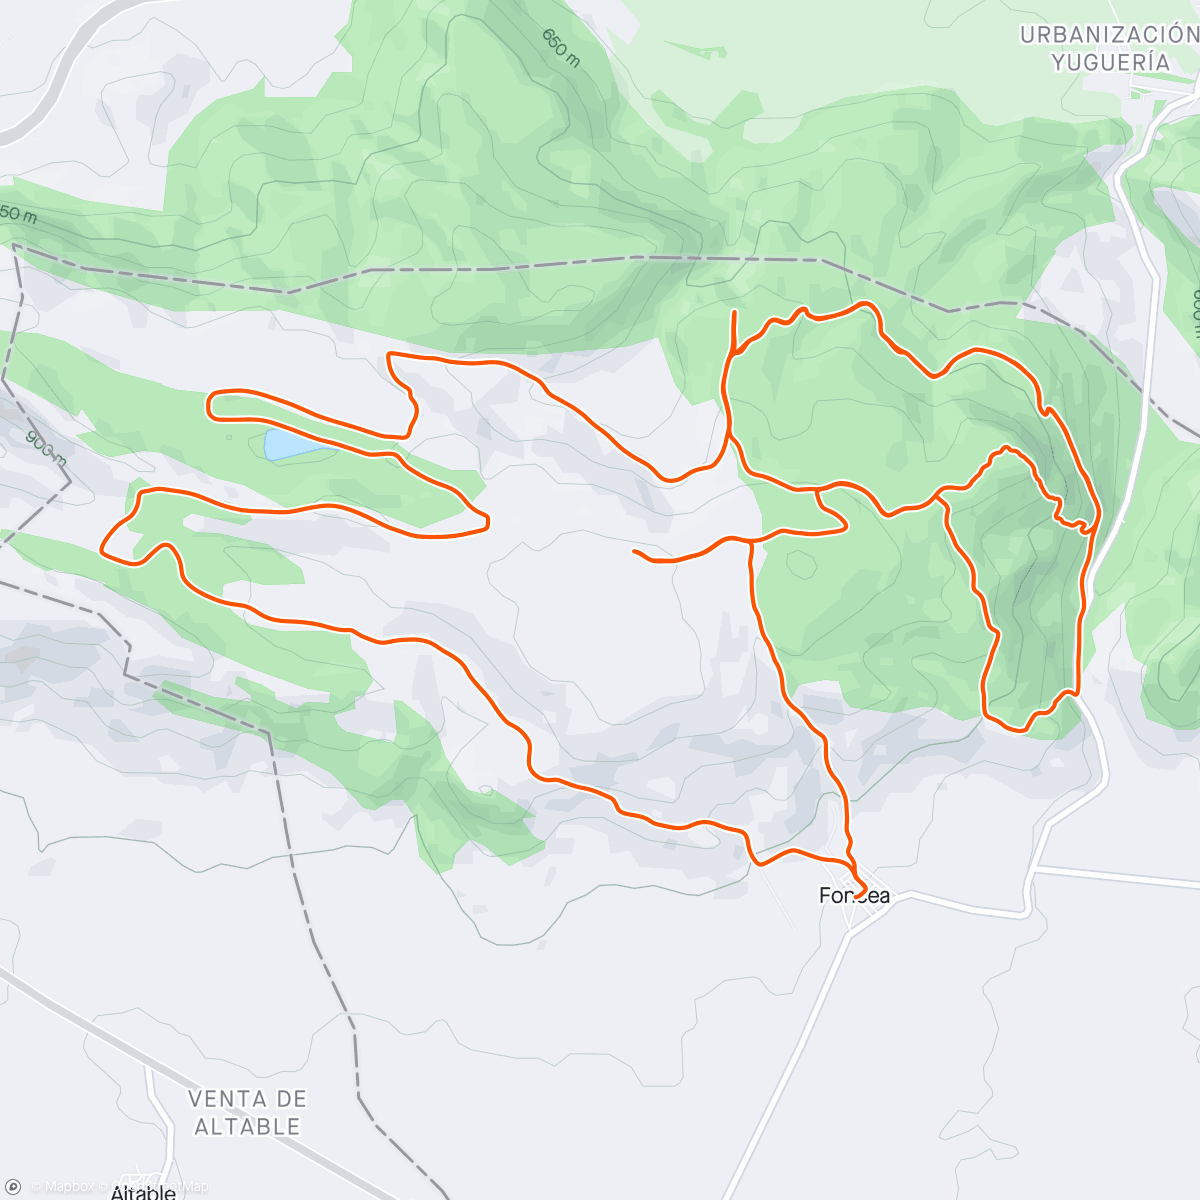 アクティビティ「Carrera de montaña matutina」の地図